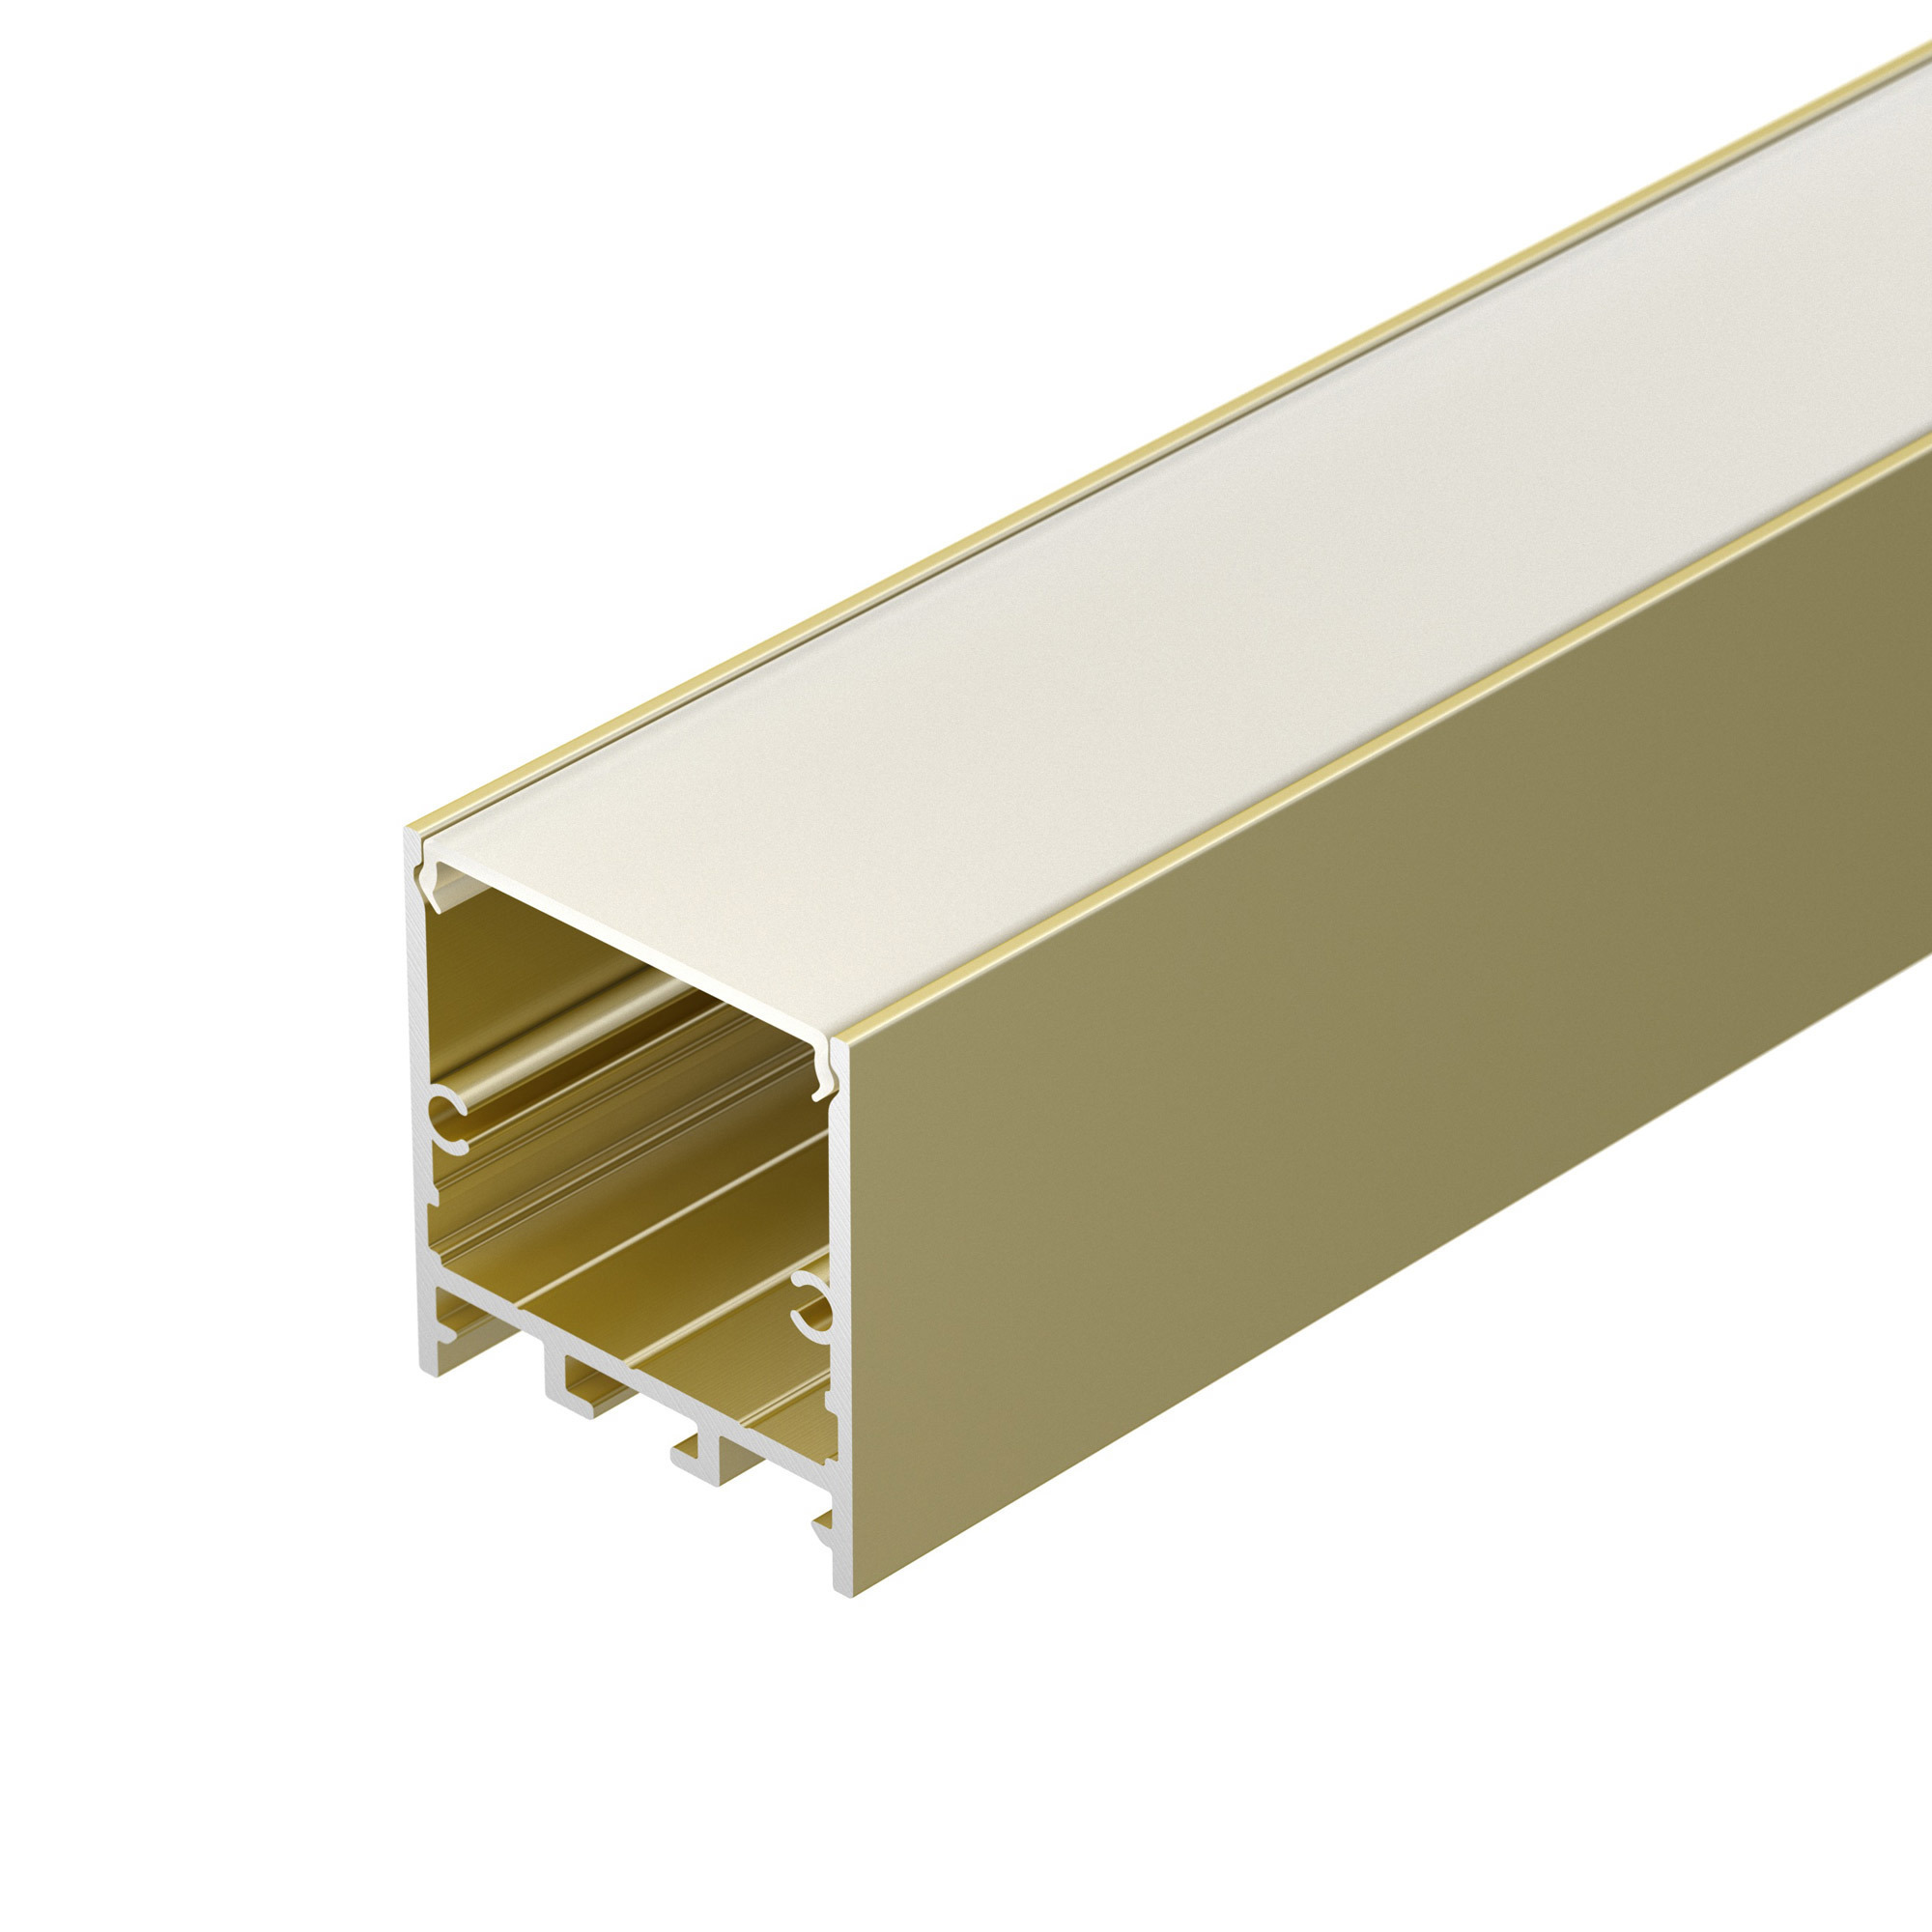 Профиль SL-LINE-3638-LW-2000 ANOD GOLD (Arlight, Алюминий) пластина 10x2x1000 мм алюминий золотой